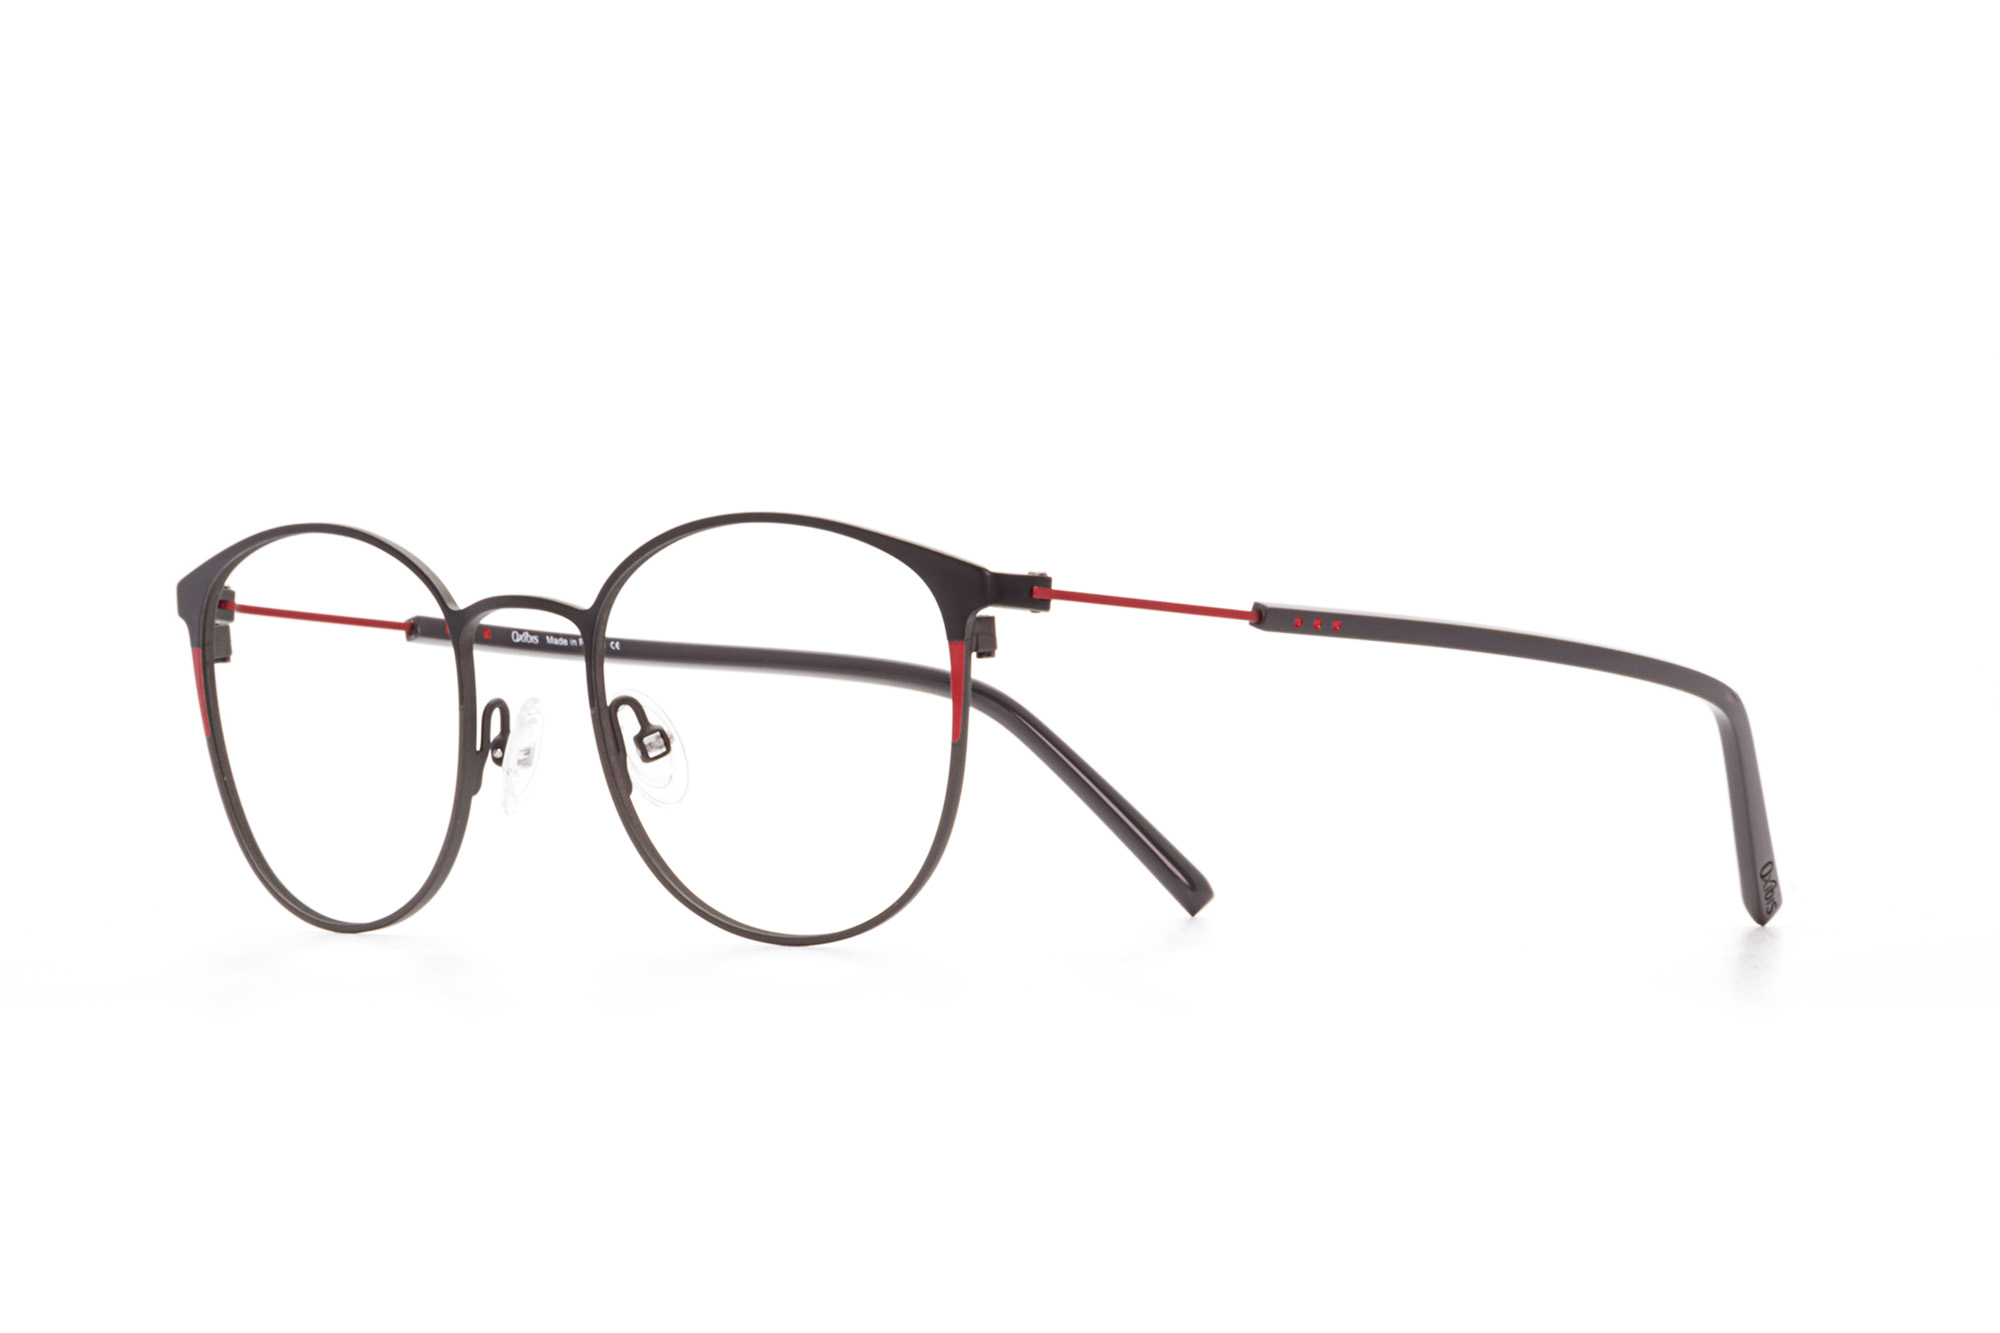 Kullanıma hazır optik tarzda işlenmiş camları ve optik uyumlu çerçevesiyle Oxibis Boost BO1C8 49 küçük ekartman siyah, kırmızı ve gri renkli yuvarlak model unisex gözlüğü optisyen veya gözlükçülerin sunacağı numarasız veya numaralı cam özelleştirmeleriyle size en yakın gözlükçüden satın alabilirsiniz.